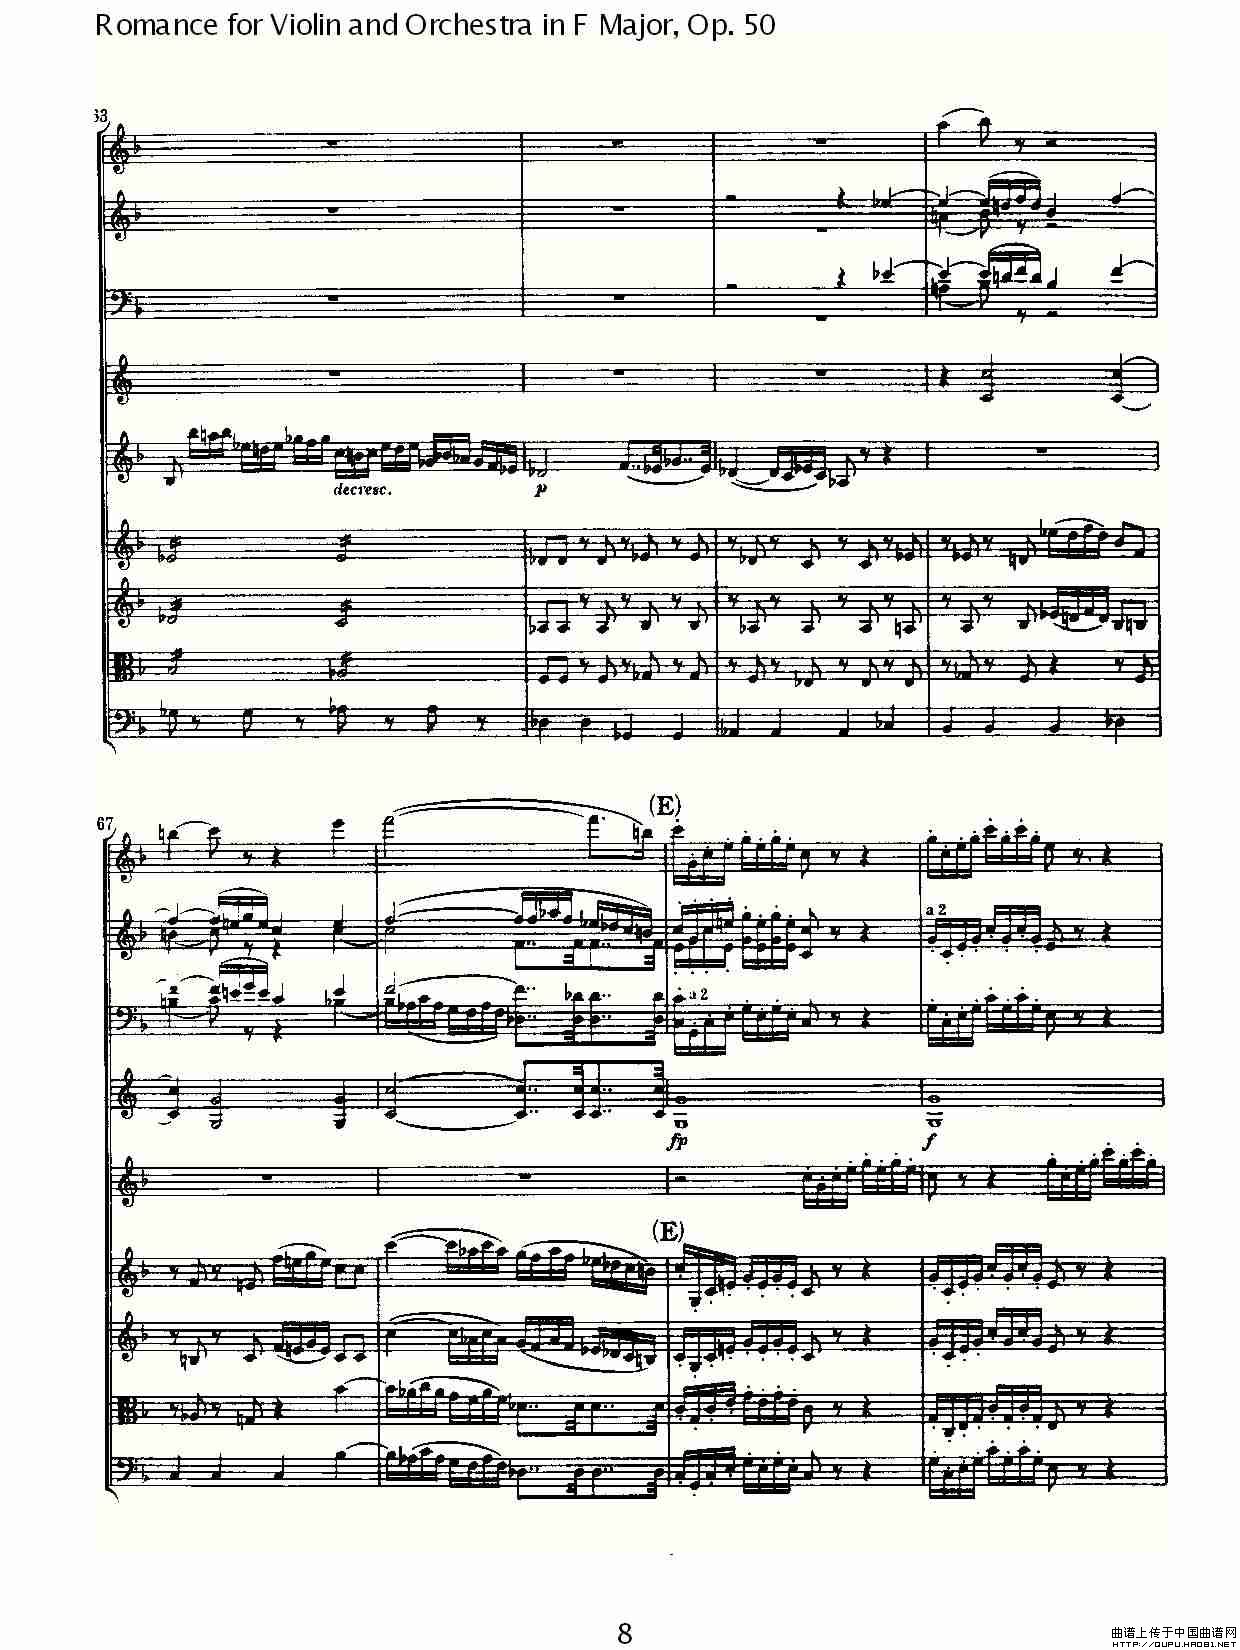 小提琴与管弦乐奏F大调浪漫曲 Op.50小提琴谱